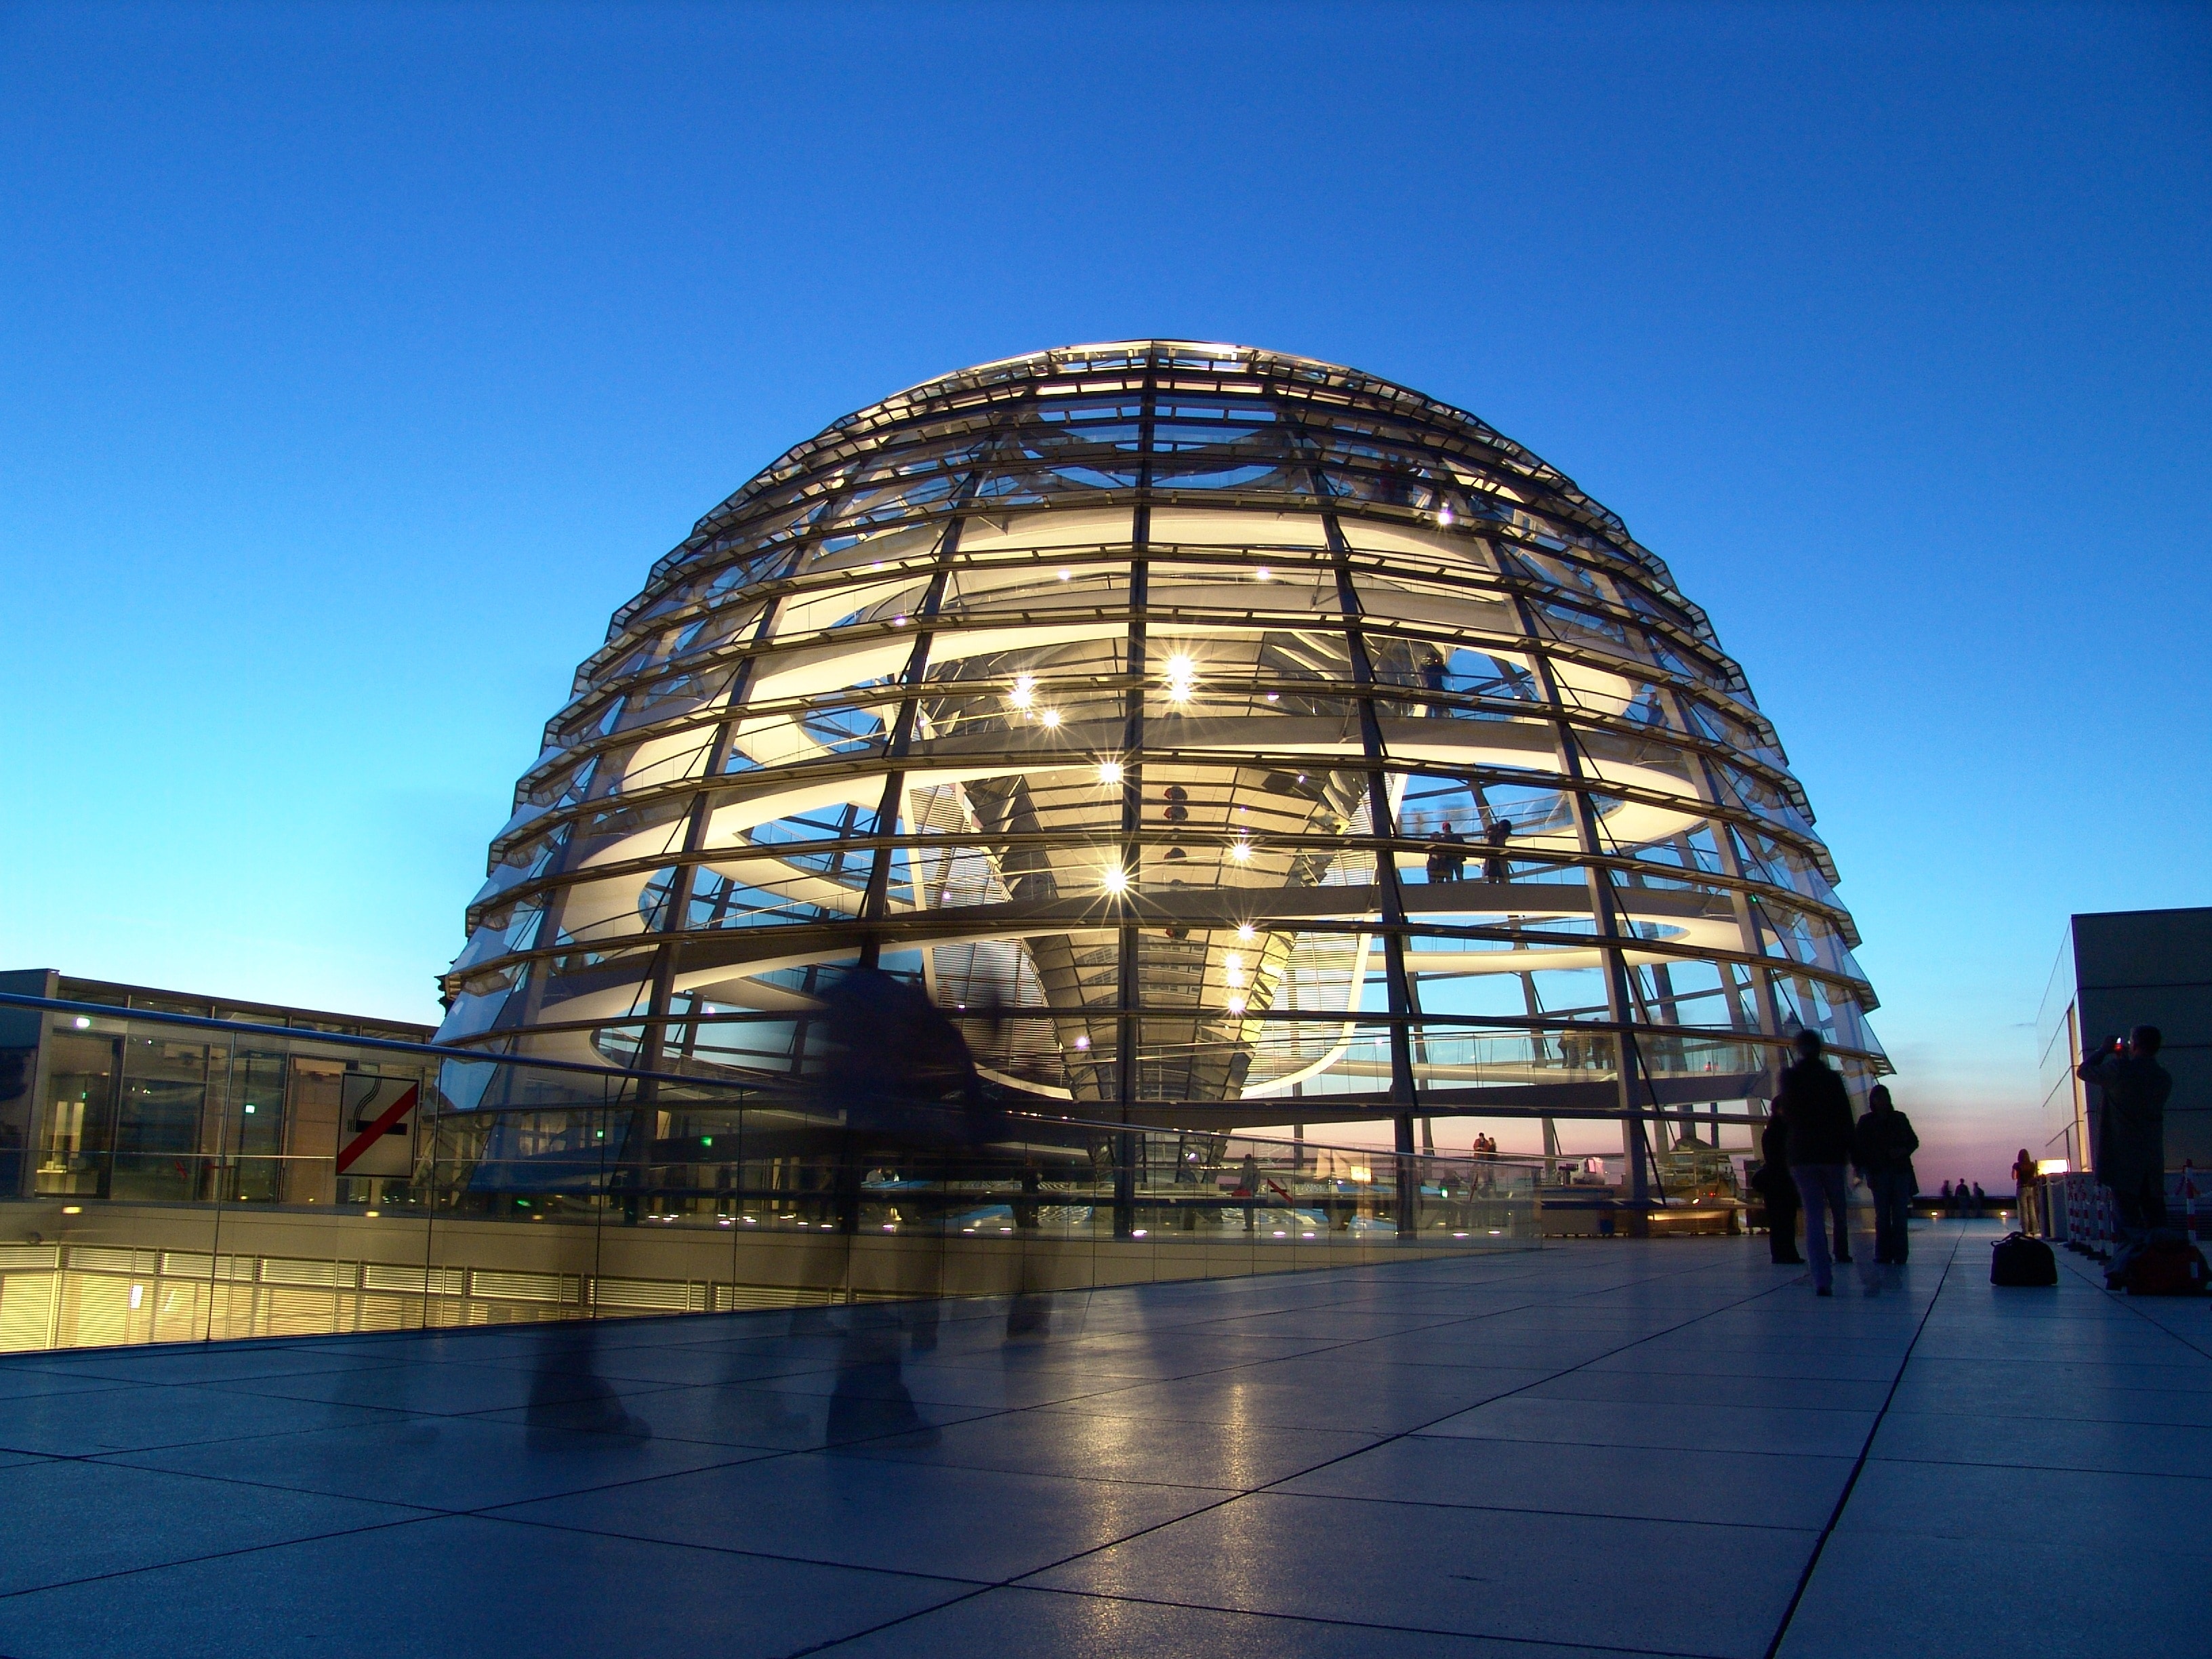 The German Volke, Reichstag, Berlin, architecture, blue